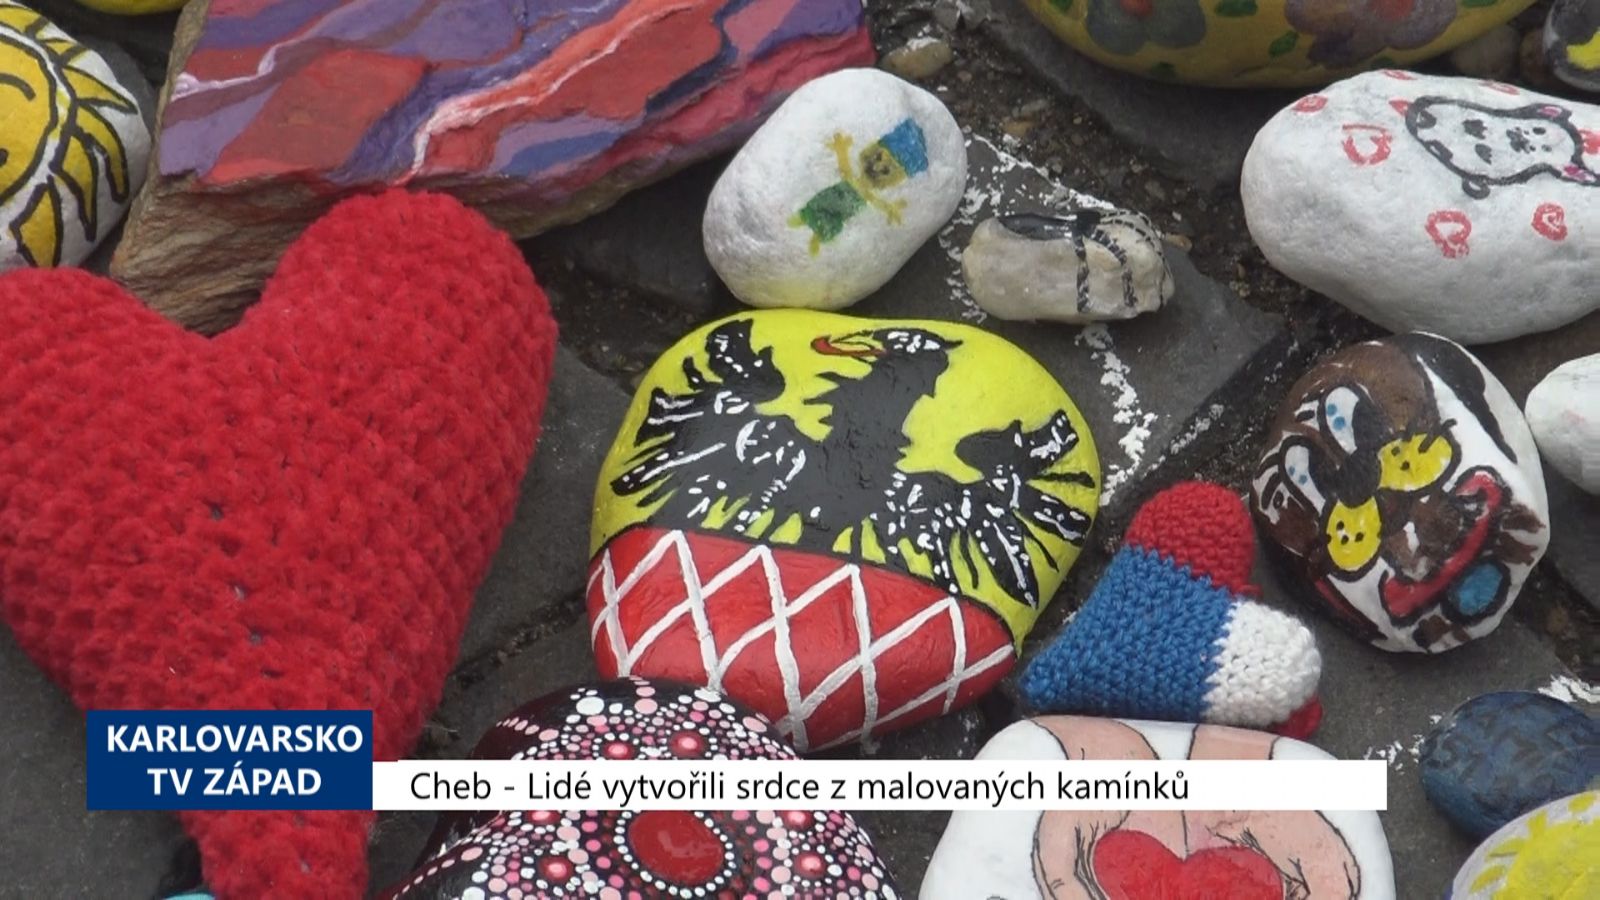 Cheb: Lidé vytvořili Srdce z malovaných kamínků (TV Západ)